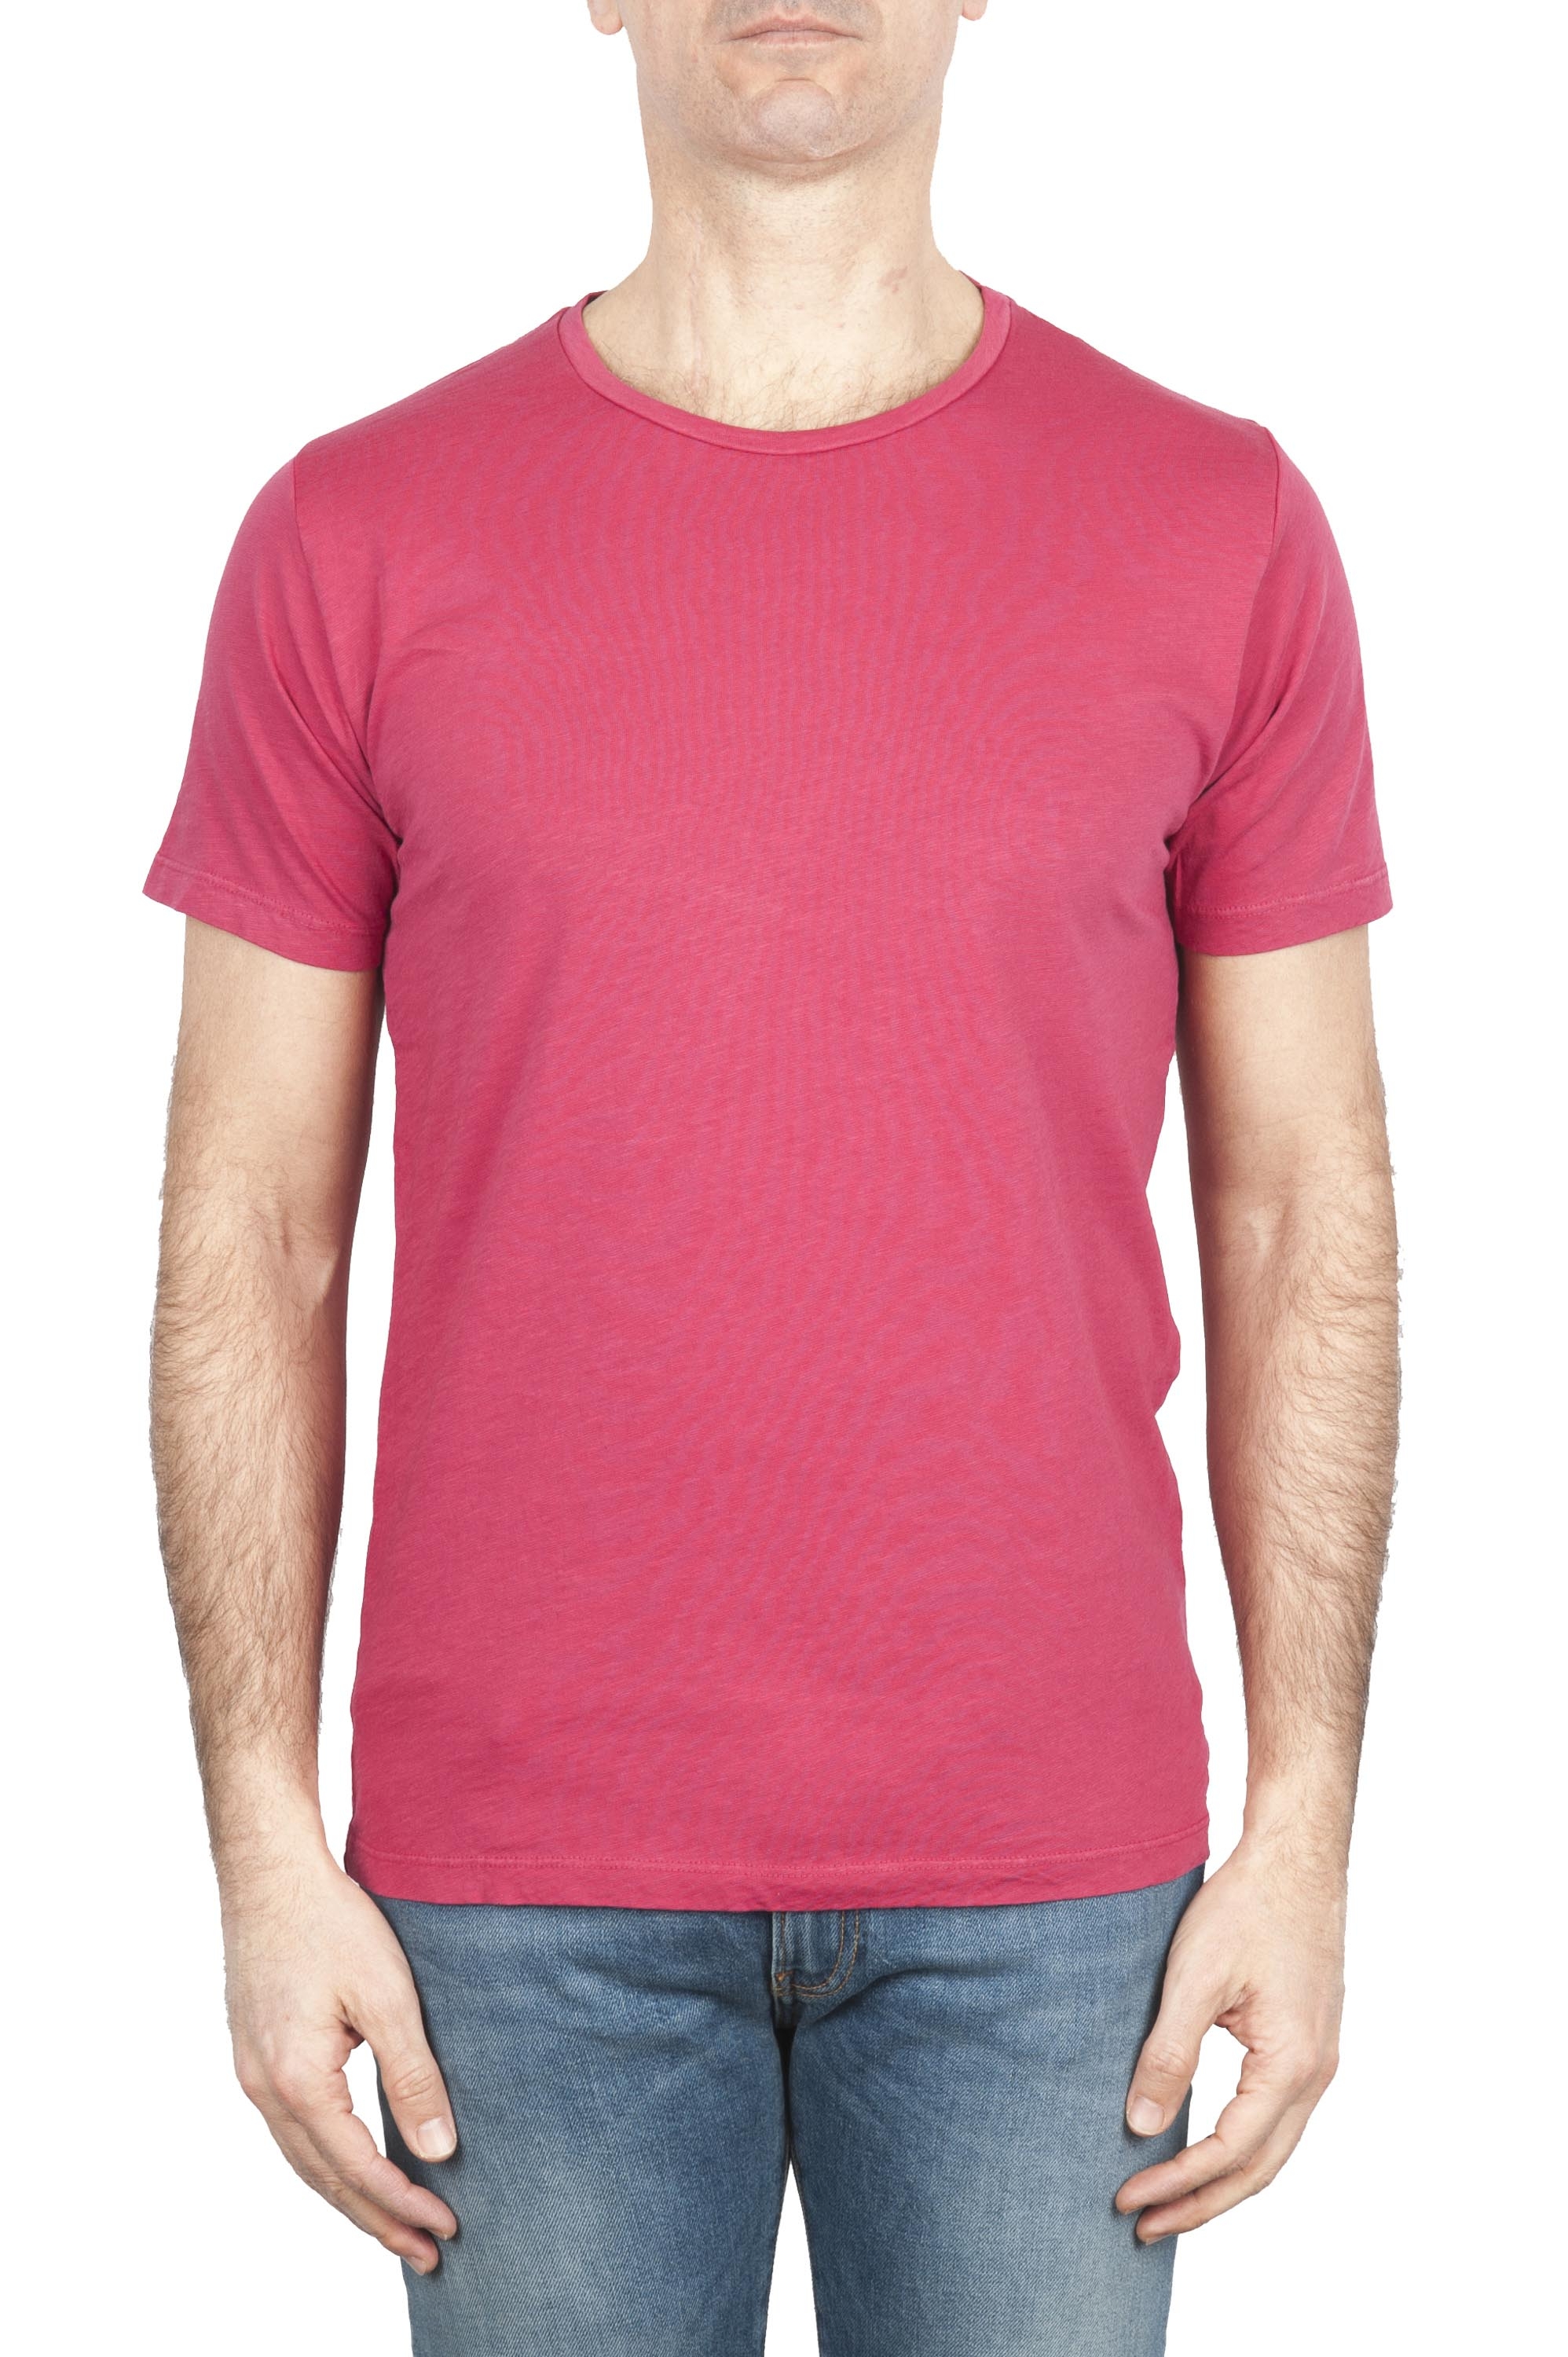 SBU 01643_19AW T-shirt girocollo aperto in cotone fiammato rossa 01